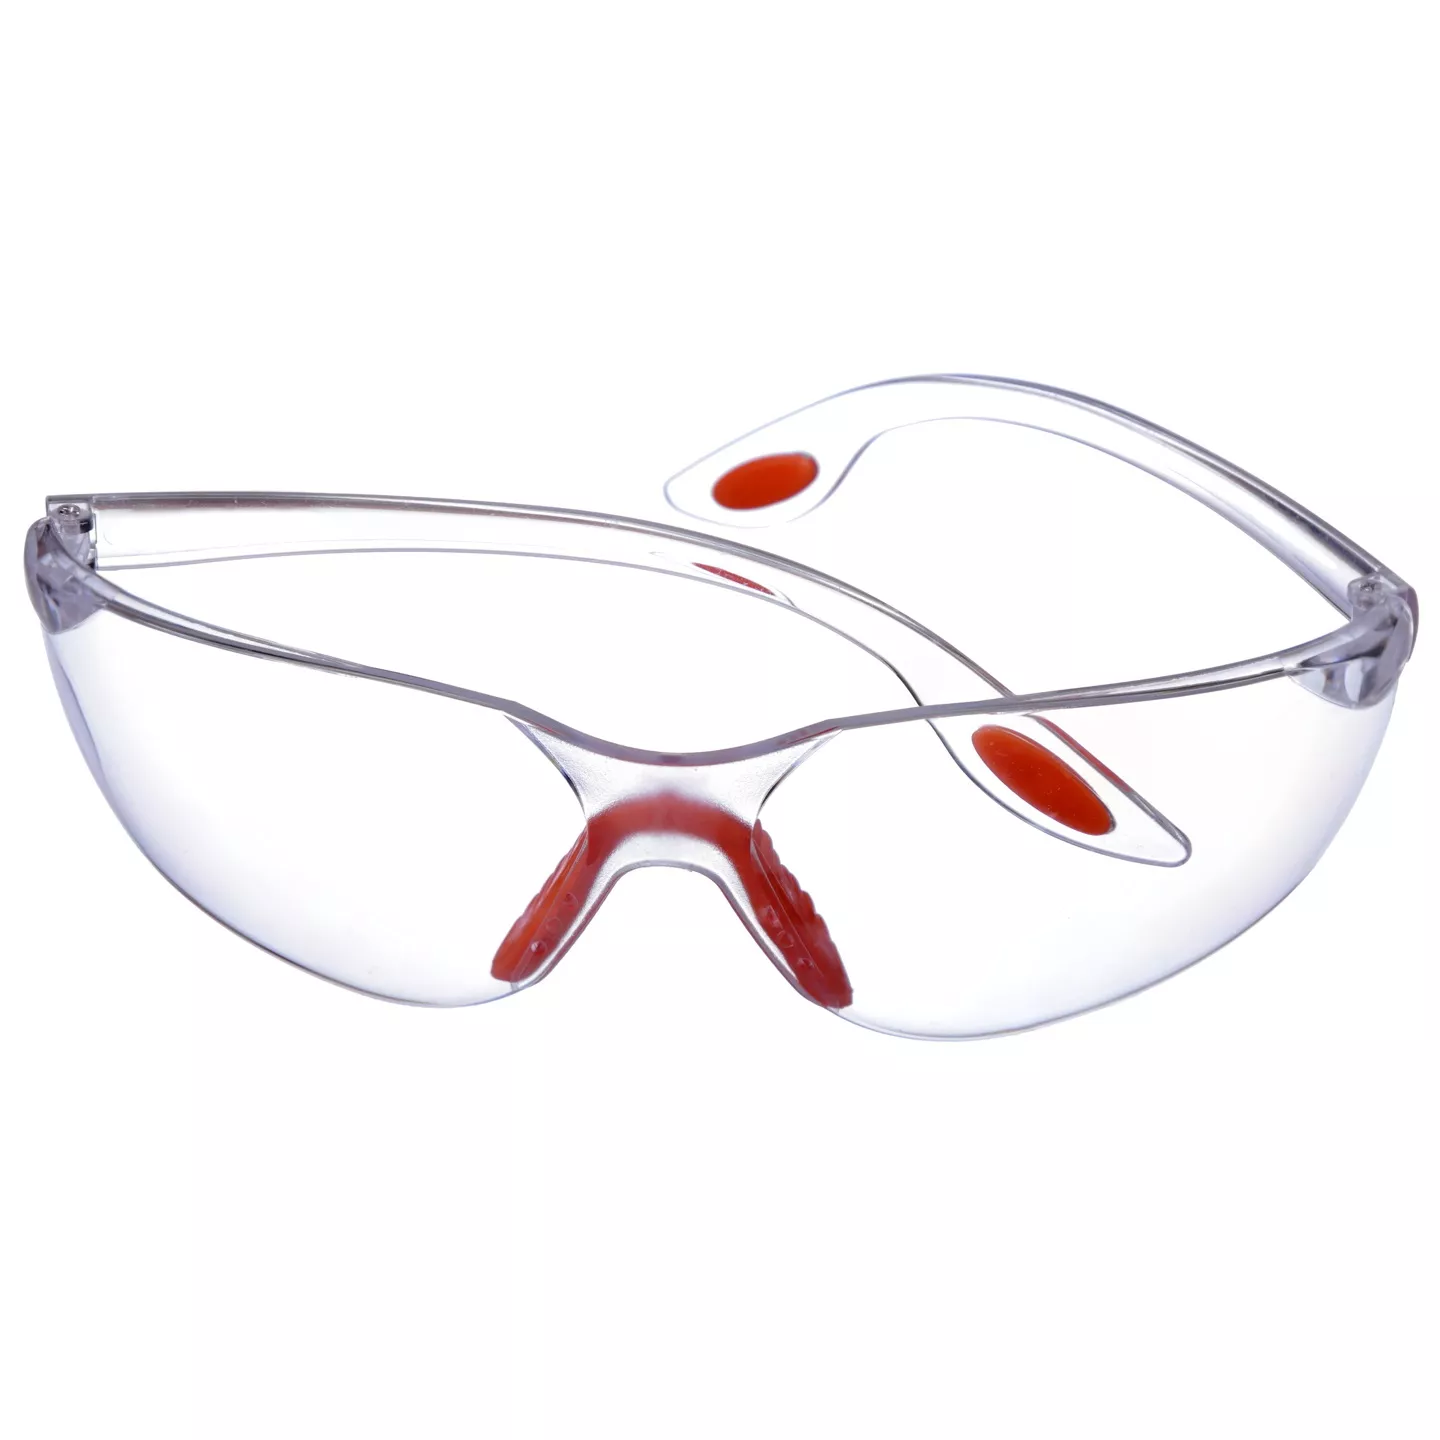 Очки защитные прозрачные с оранжевой оправой SG06